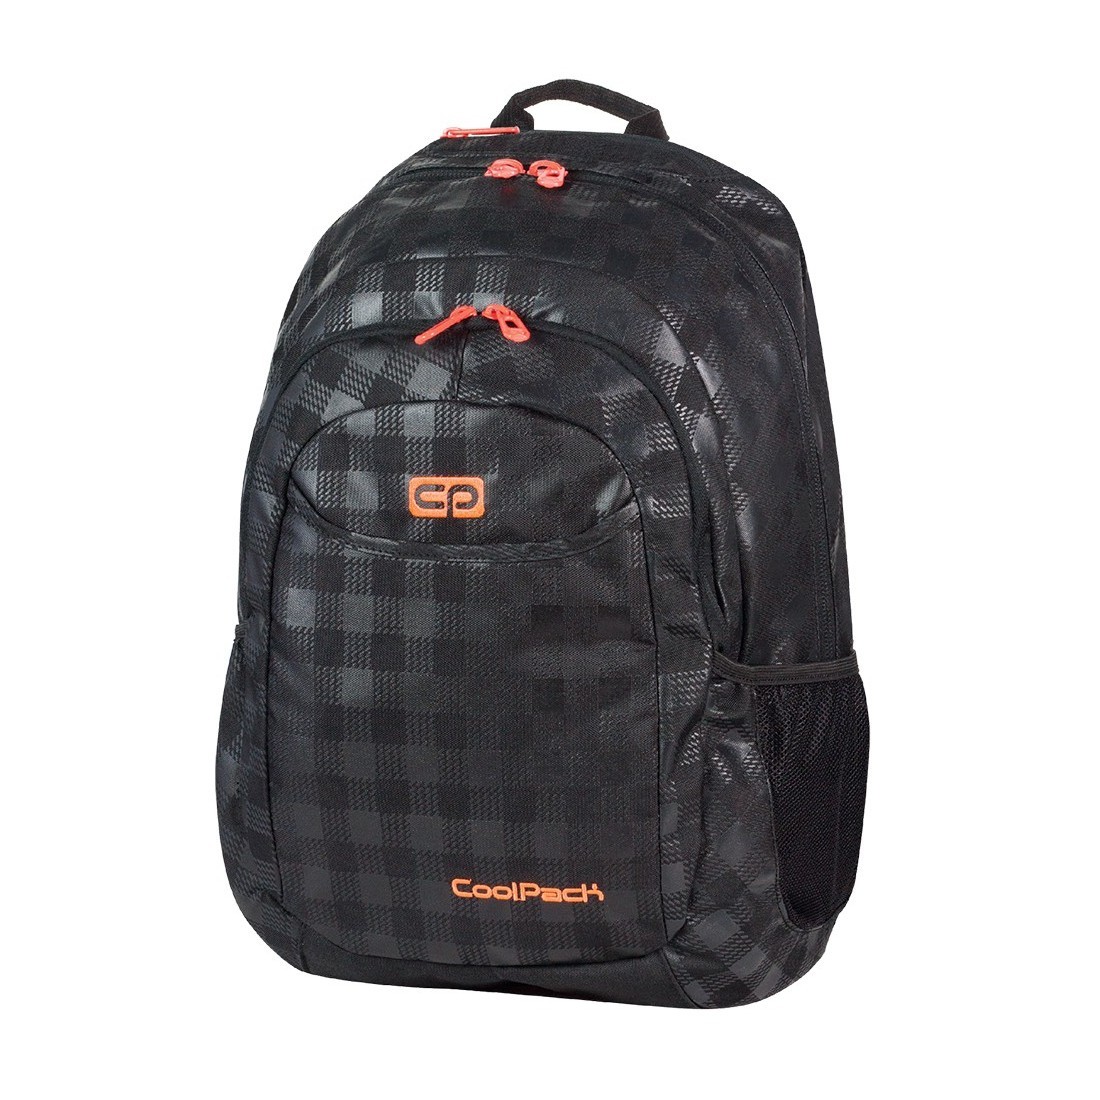 Plecak młodzieżowy na laptop CoolPack CP czarny w kratkę + pomarańczowe wstawki URBAN BLACK & ORANGE 422 - plecak-tornister.pl